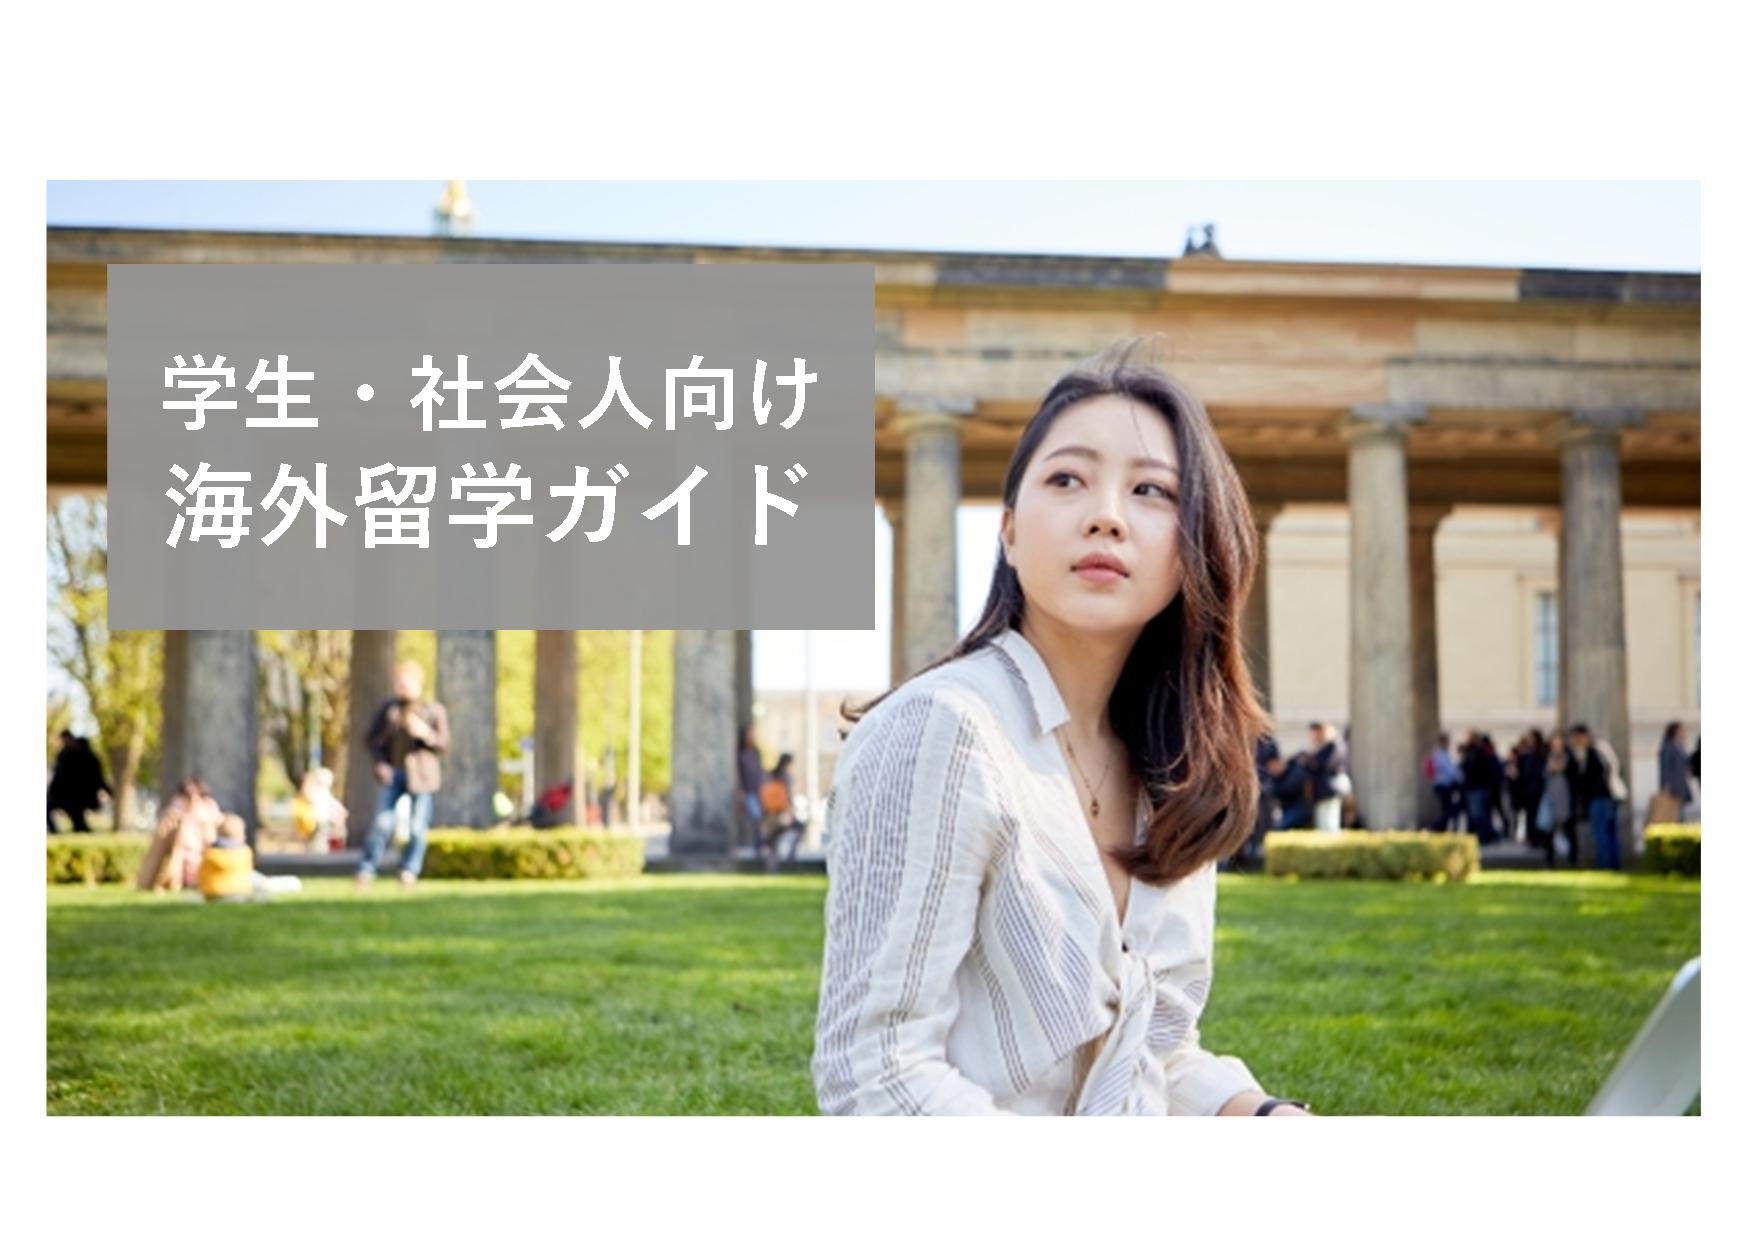 高校生 大学生 社会人向け 海外留学の完全ガイド Panda Blog